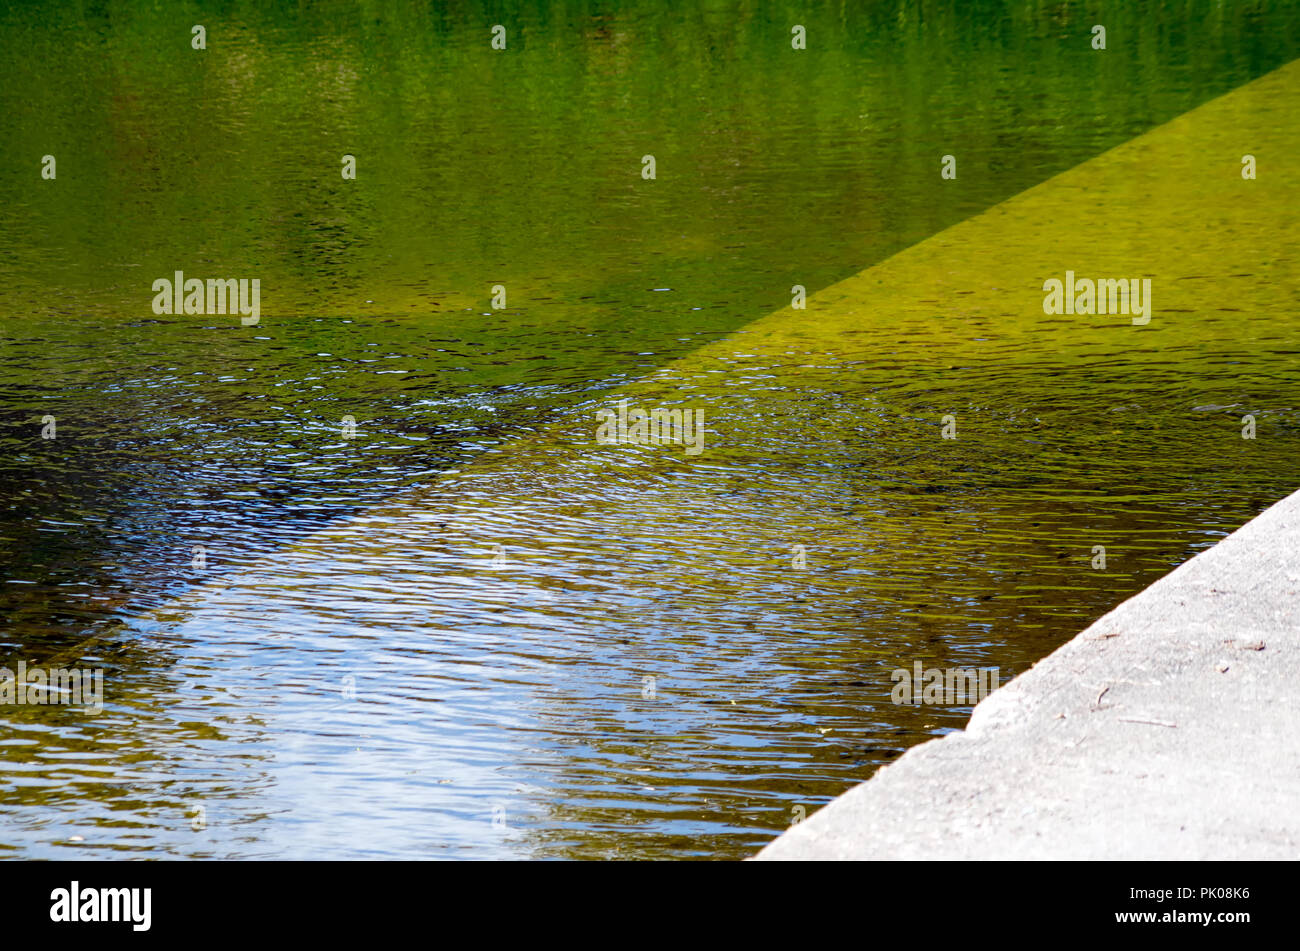 Verde, Oro e ambra colori riflessi nella superficie ondulata di un corpo di acqua, sfondo, visualizzare tre. Foto Stock